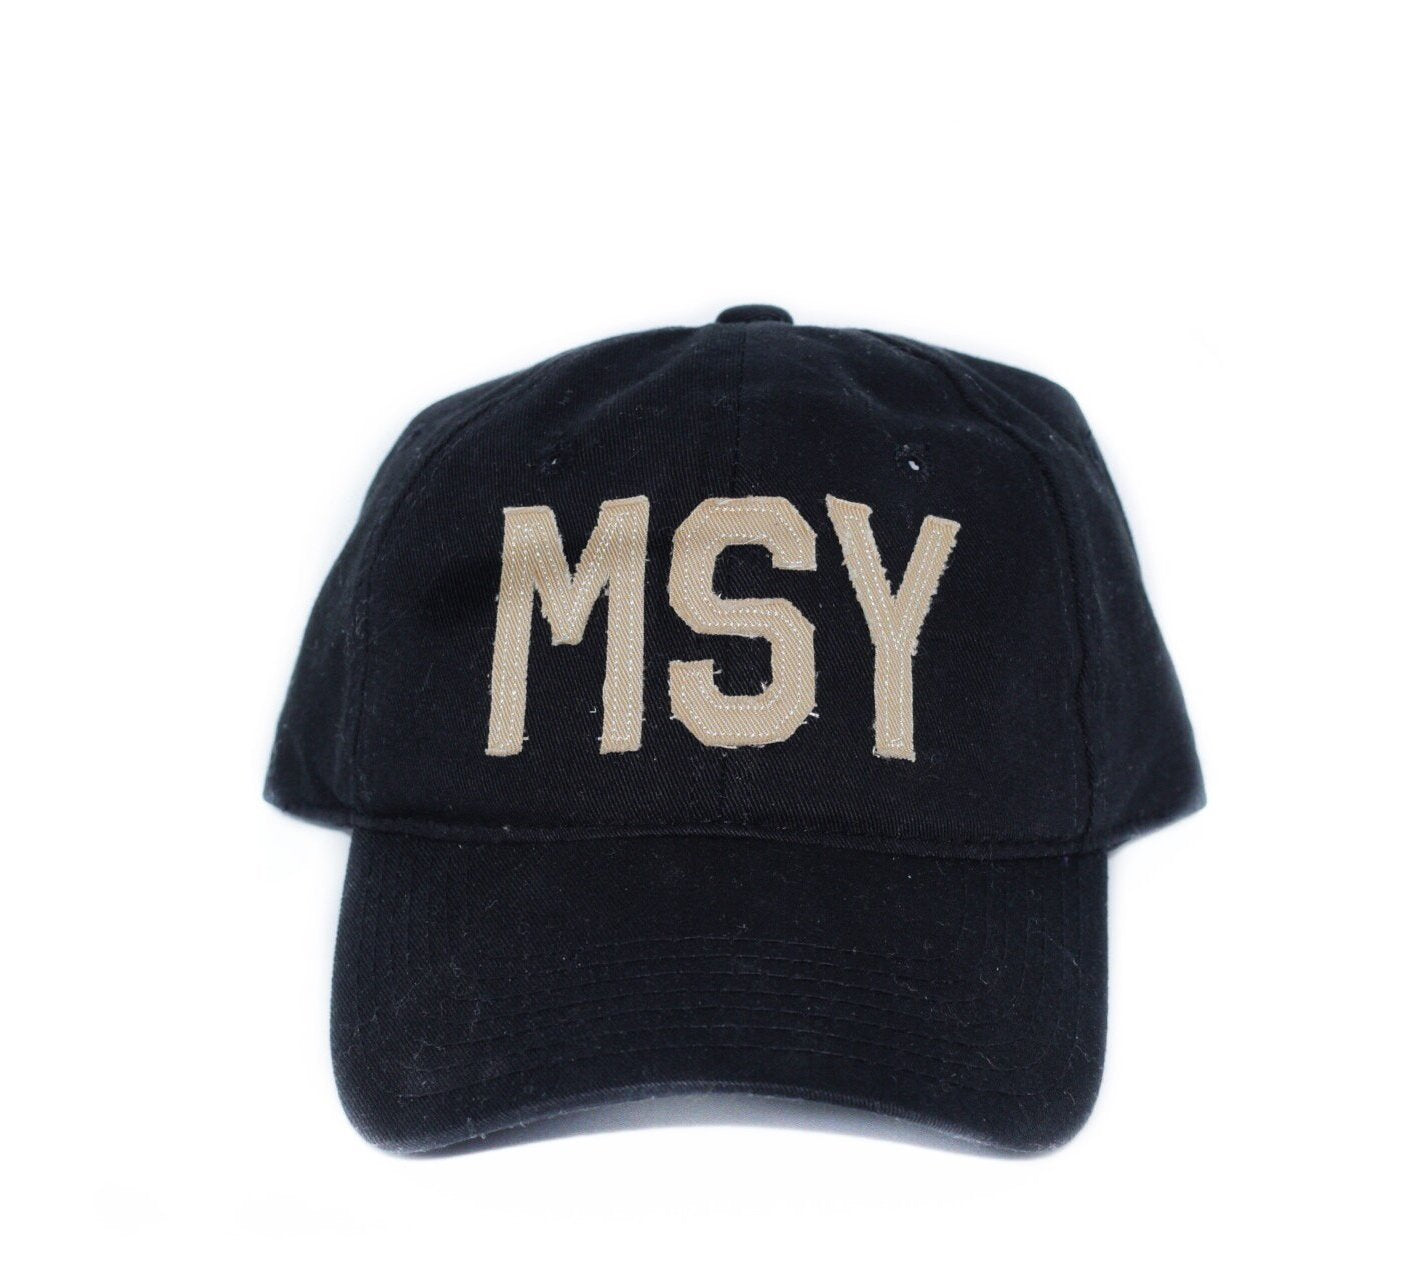 MSY Hat